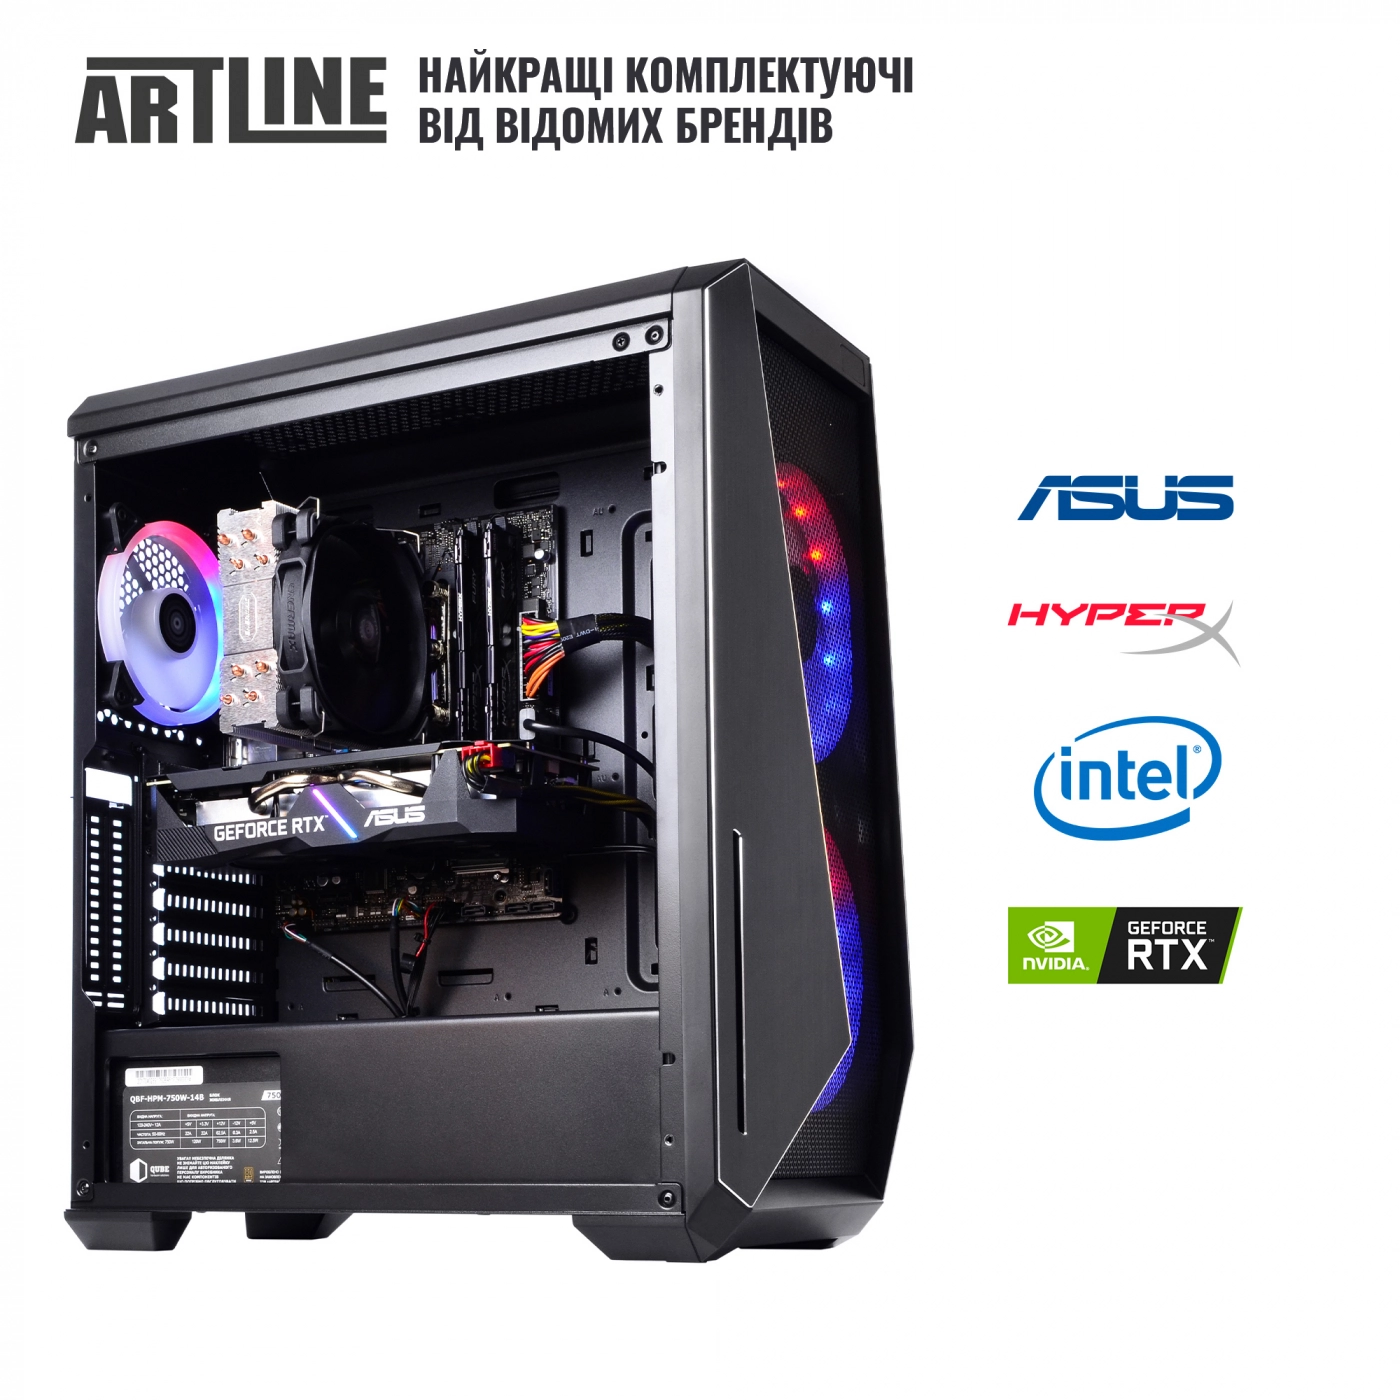 Купить Компьютер ARTLINE Gaming X90v01 - фото 6